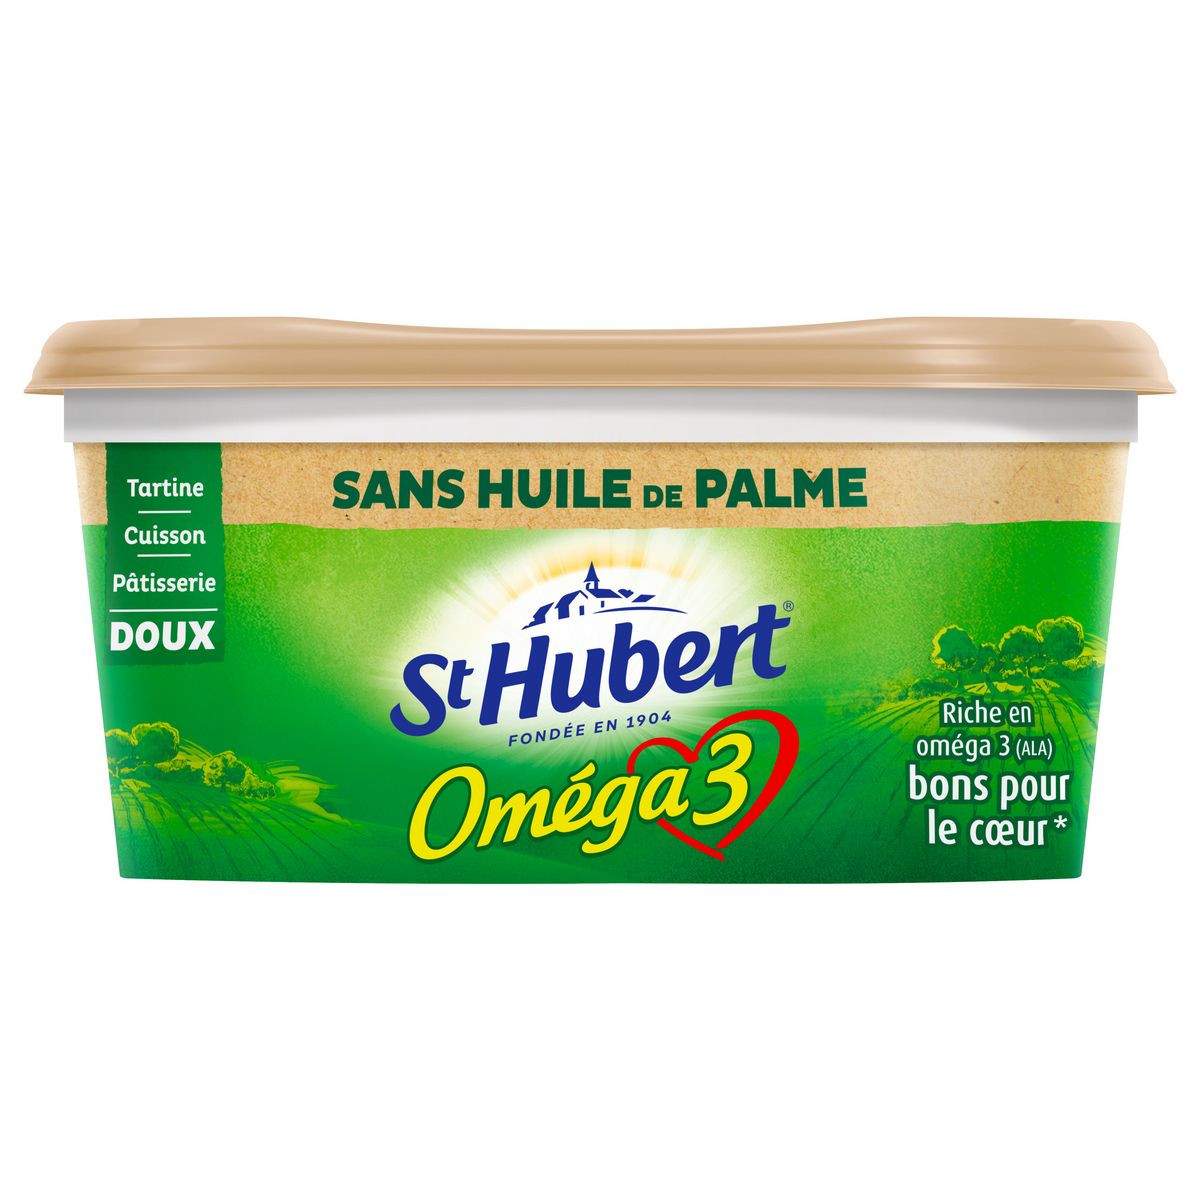 ST HUBERT Margarine oméga 3 doux sans huile de palme tartine et cuisson 500g